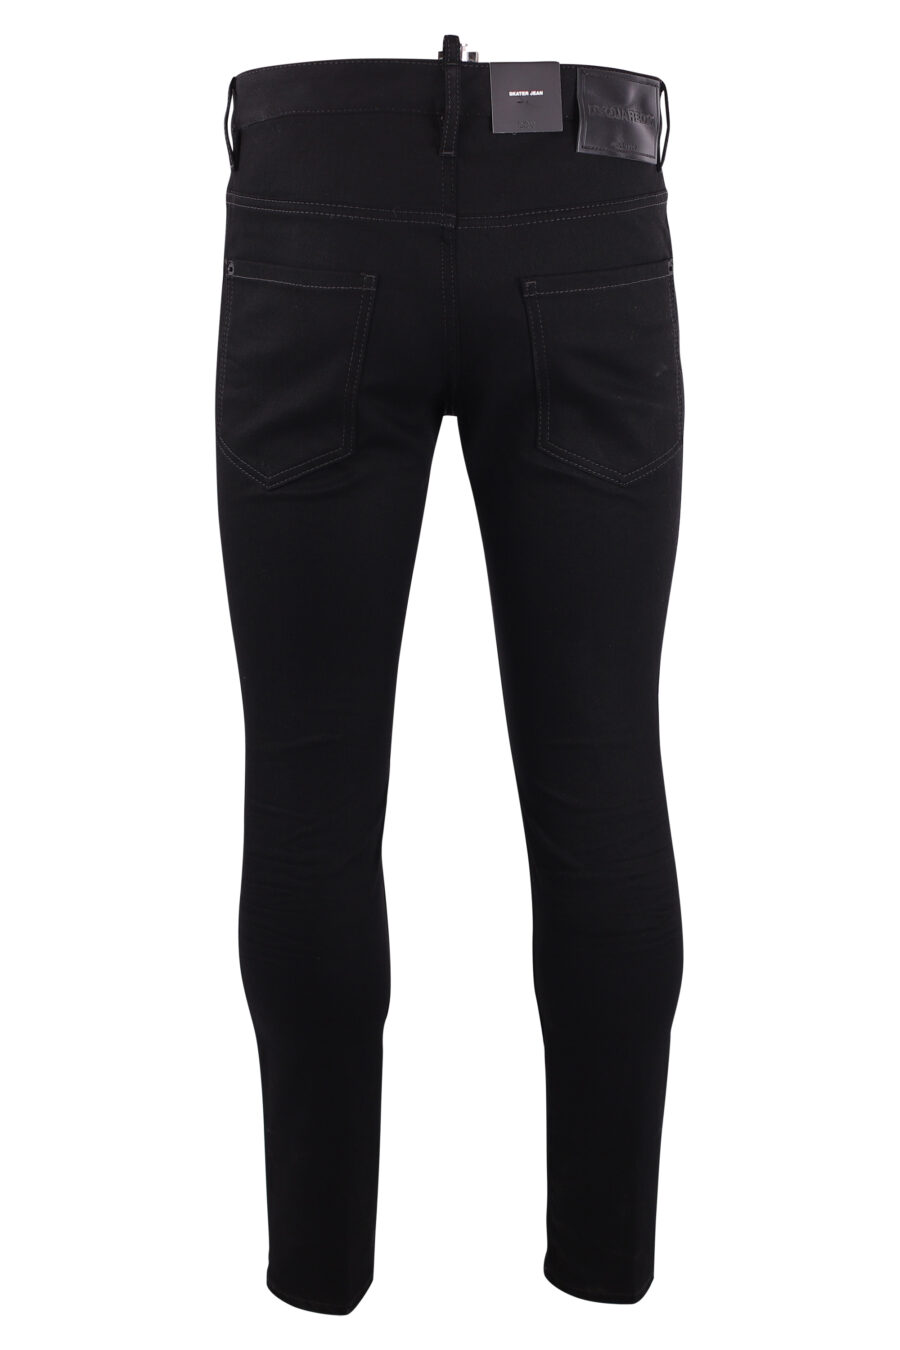 Skater jeans black - IMG 3192